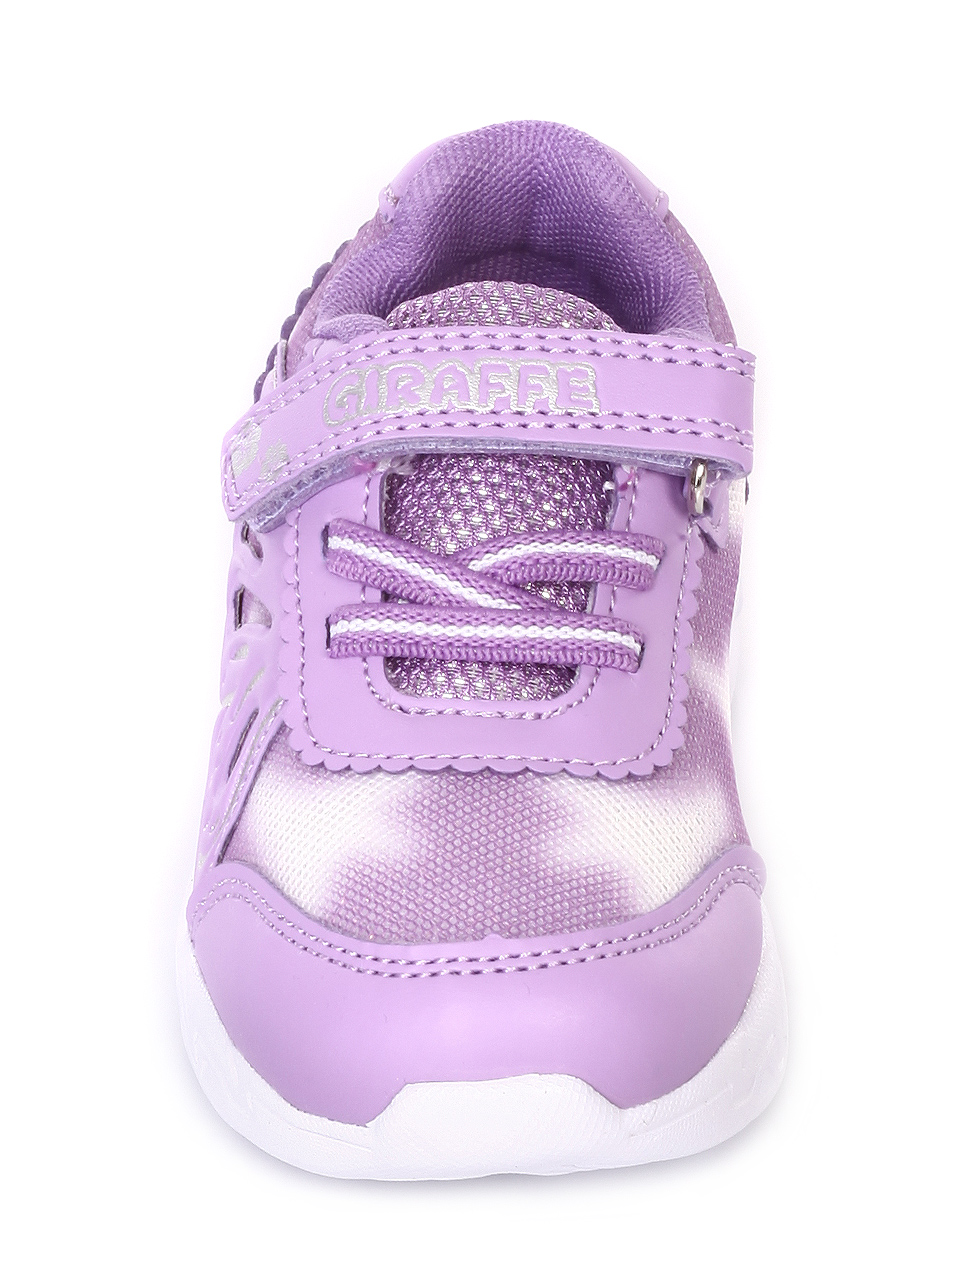 Детски обувки със светещи елементи в лилаво 18K-19226 purple